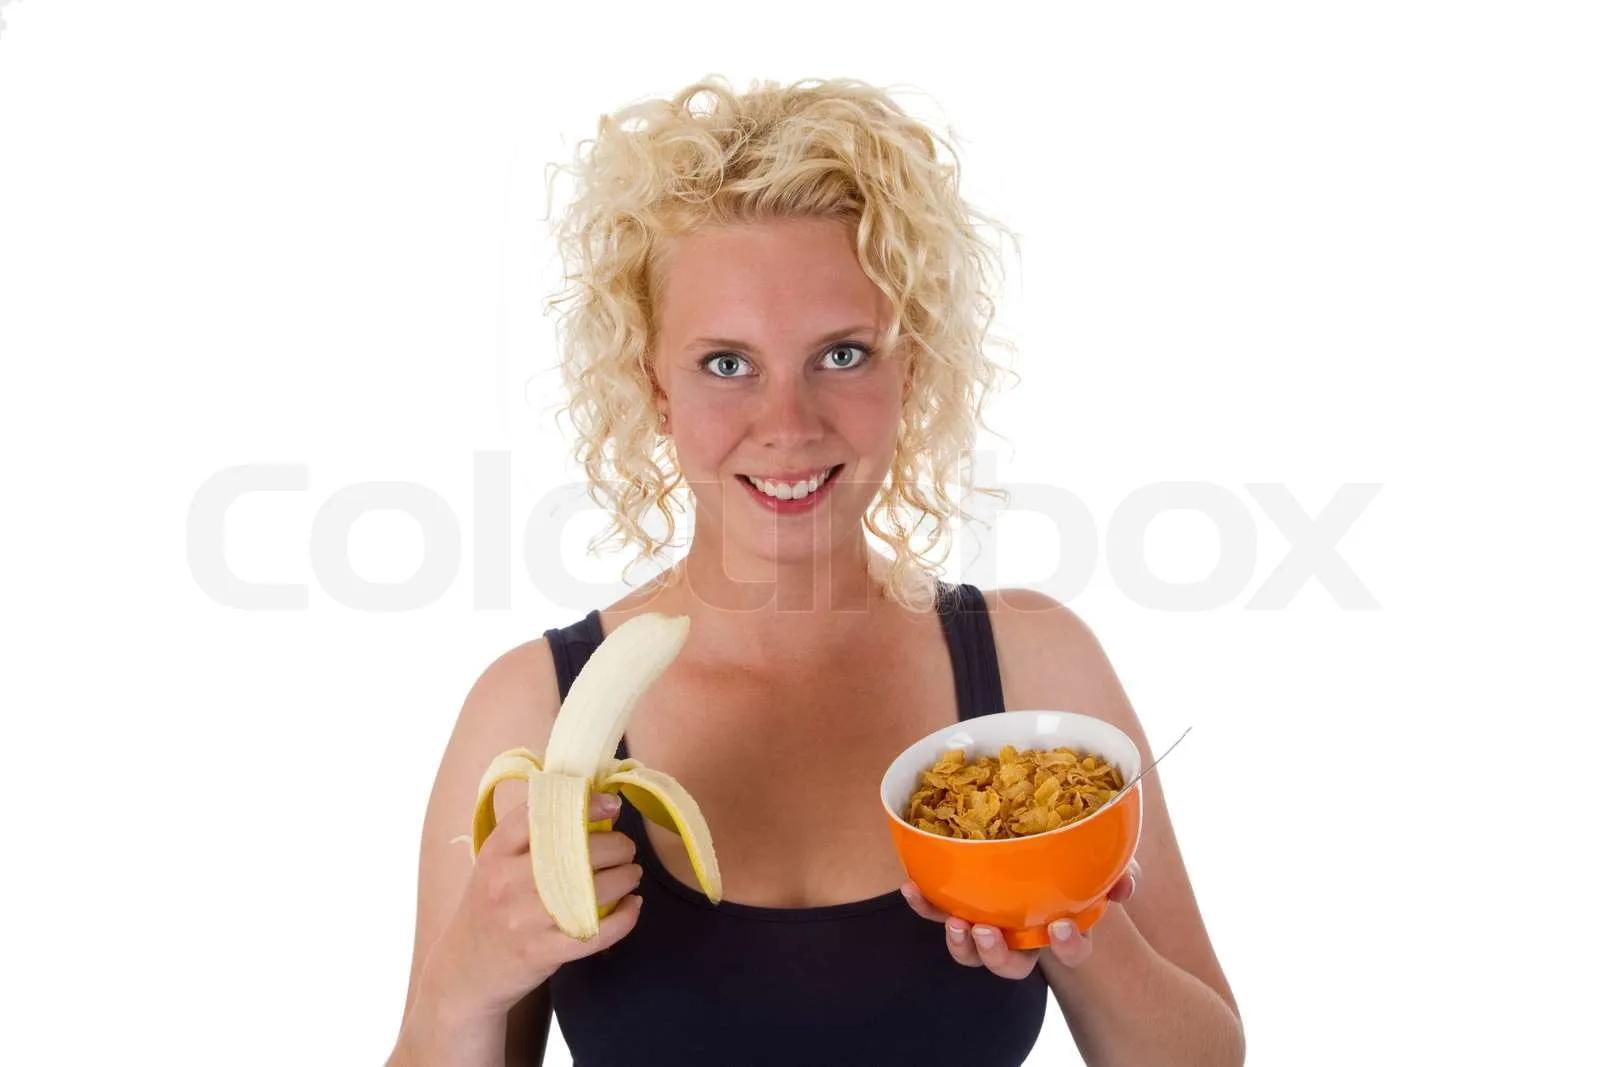 Junge Frau mit Banane und cornflakes | Stock Bild | Colourbox